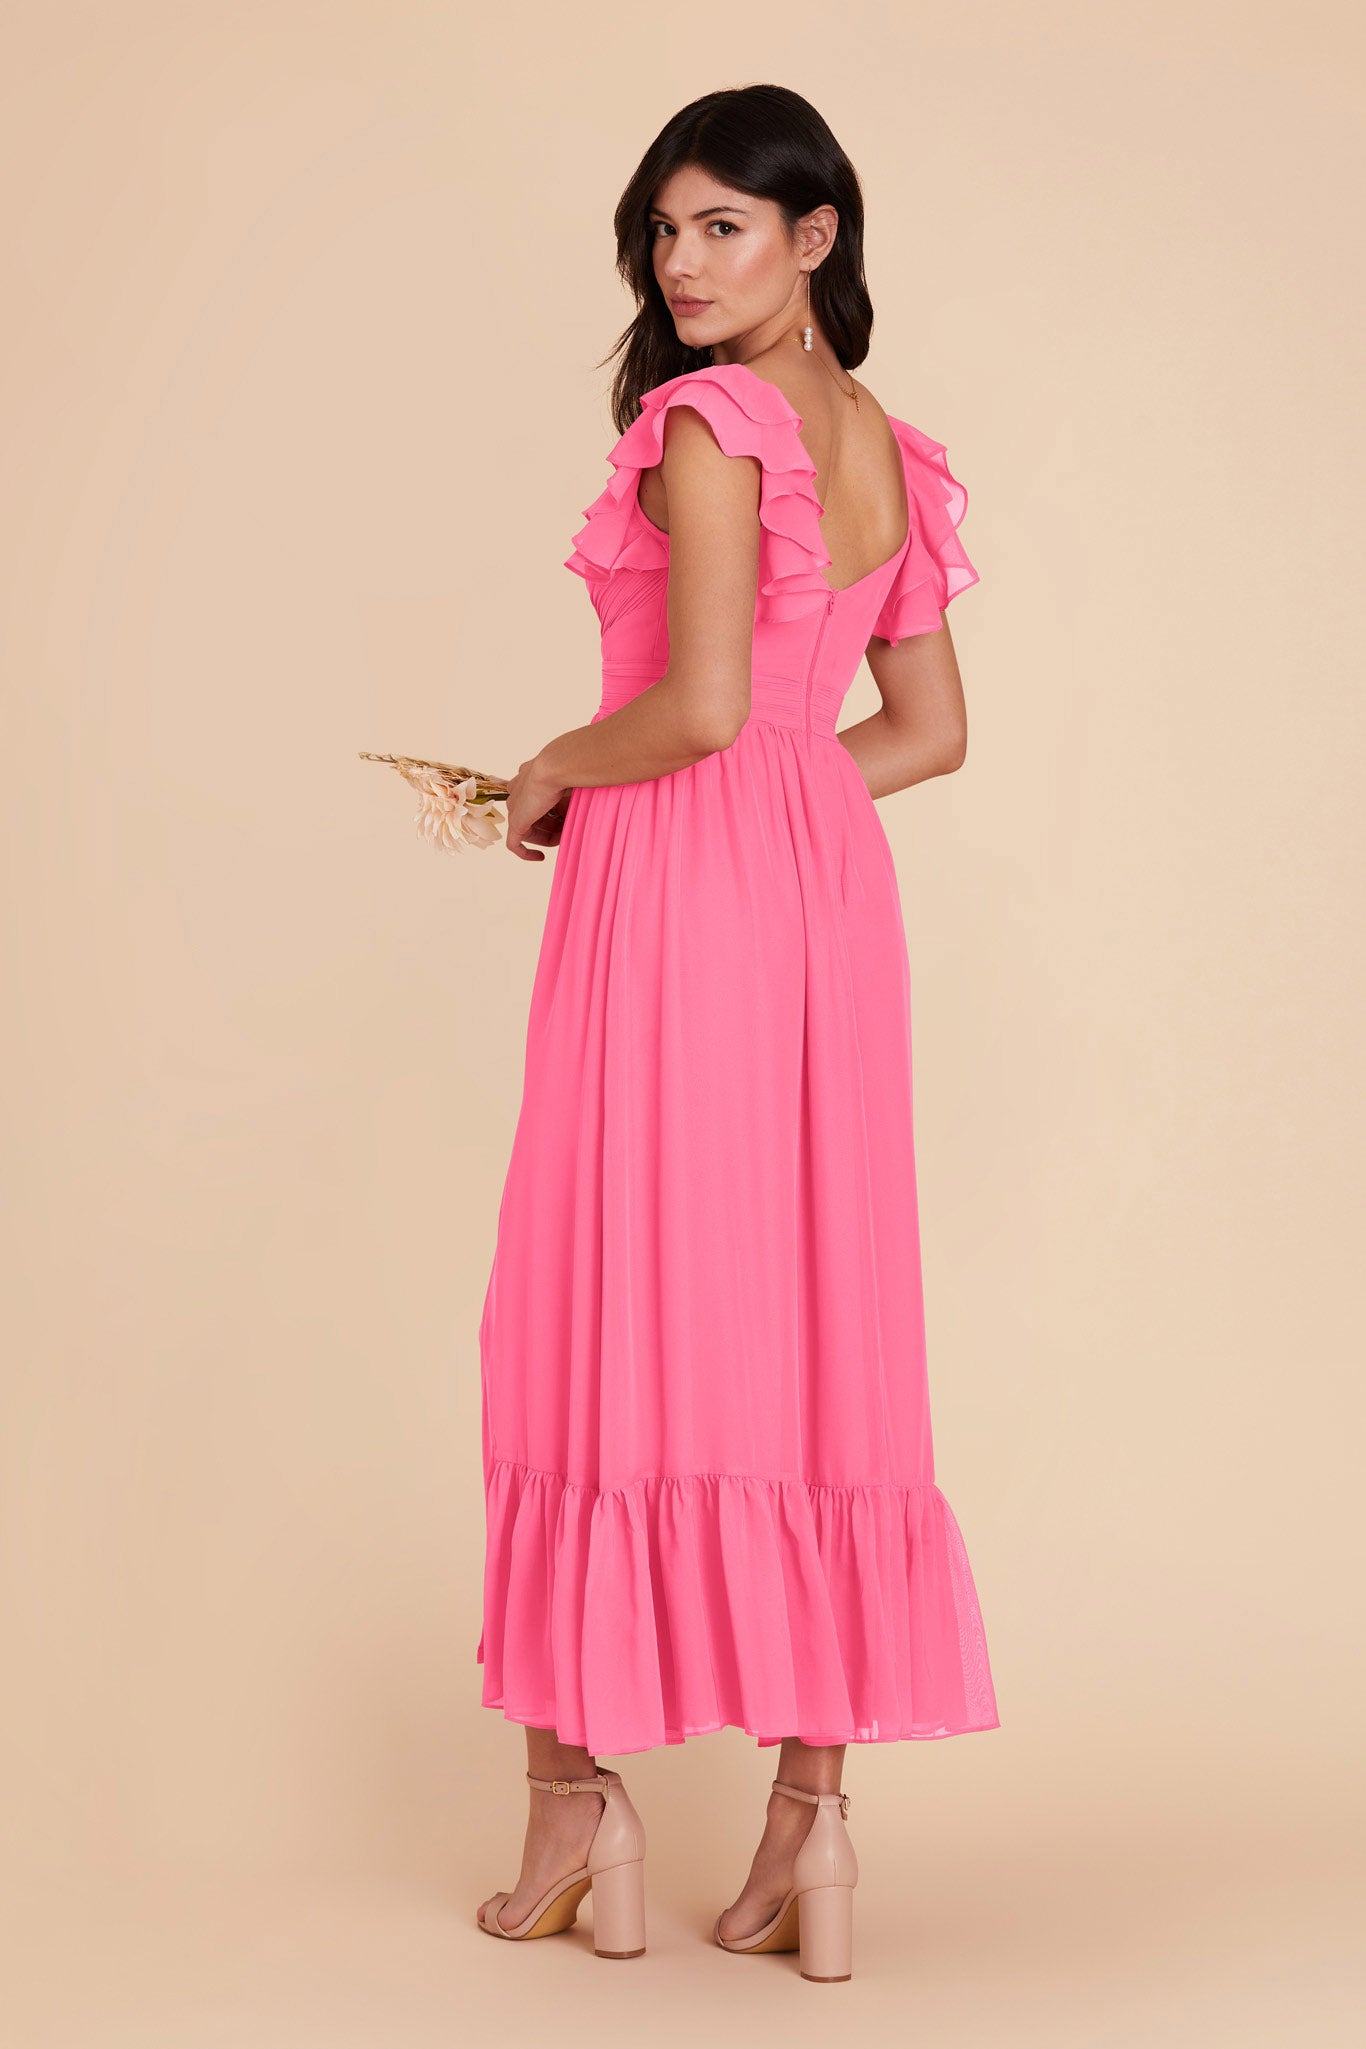 Bon Bon Pink Michelle Chiffon Dress by Birdy Grey